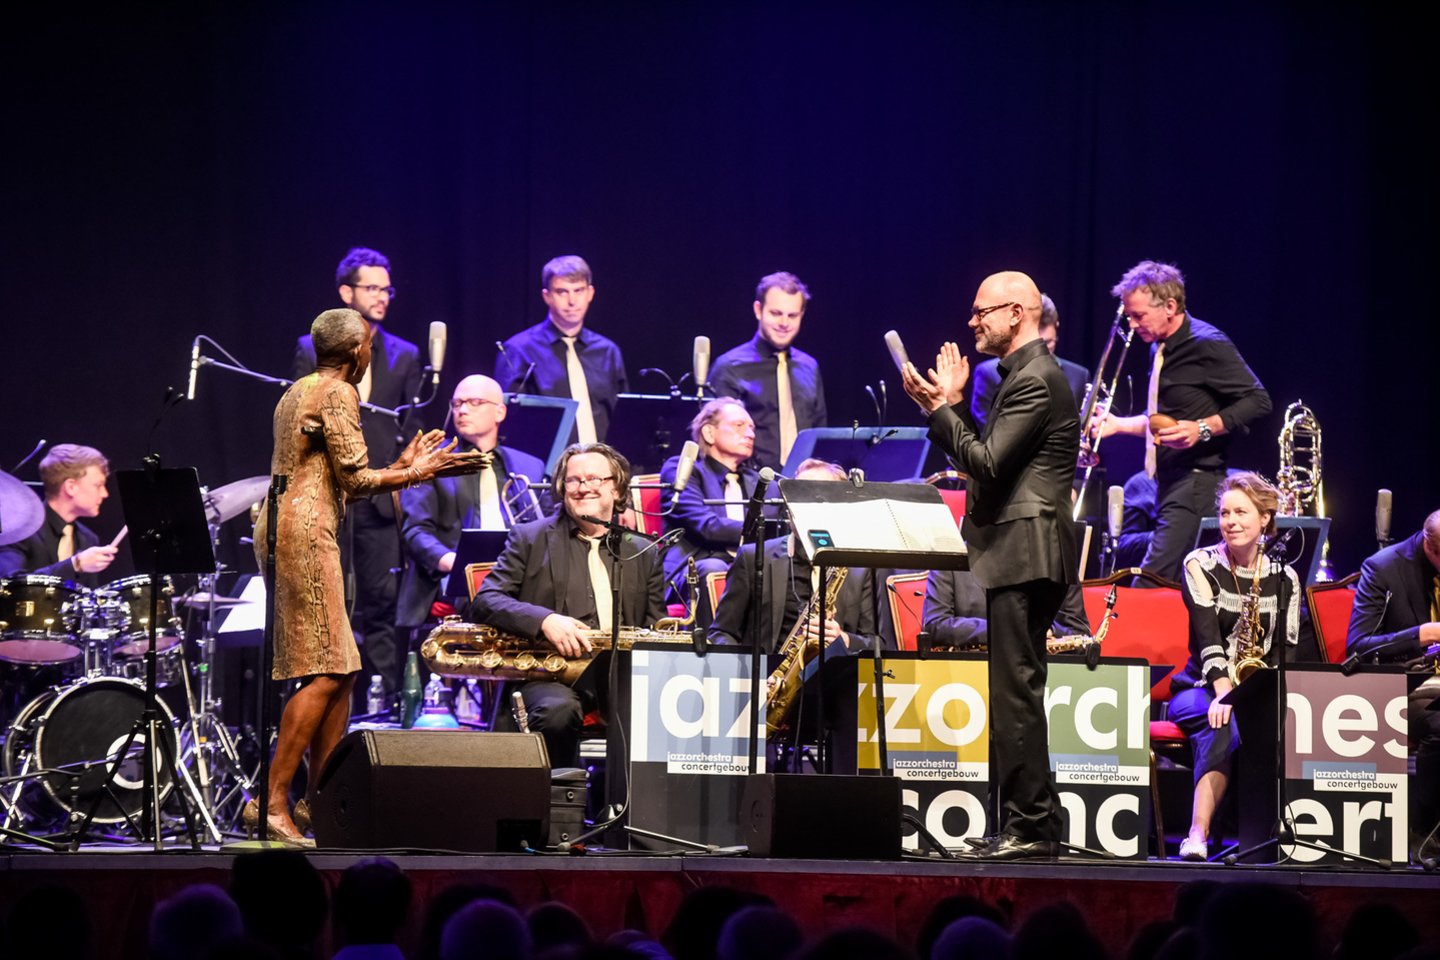 Pirmadienį koncertą surengė Madeline Bell ir svinguojantis „Concertgebouw“ džiazo orkestras iš Nyderlandų.